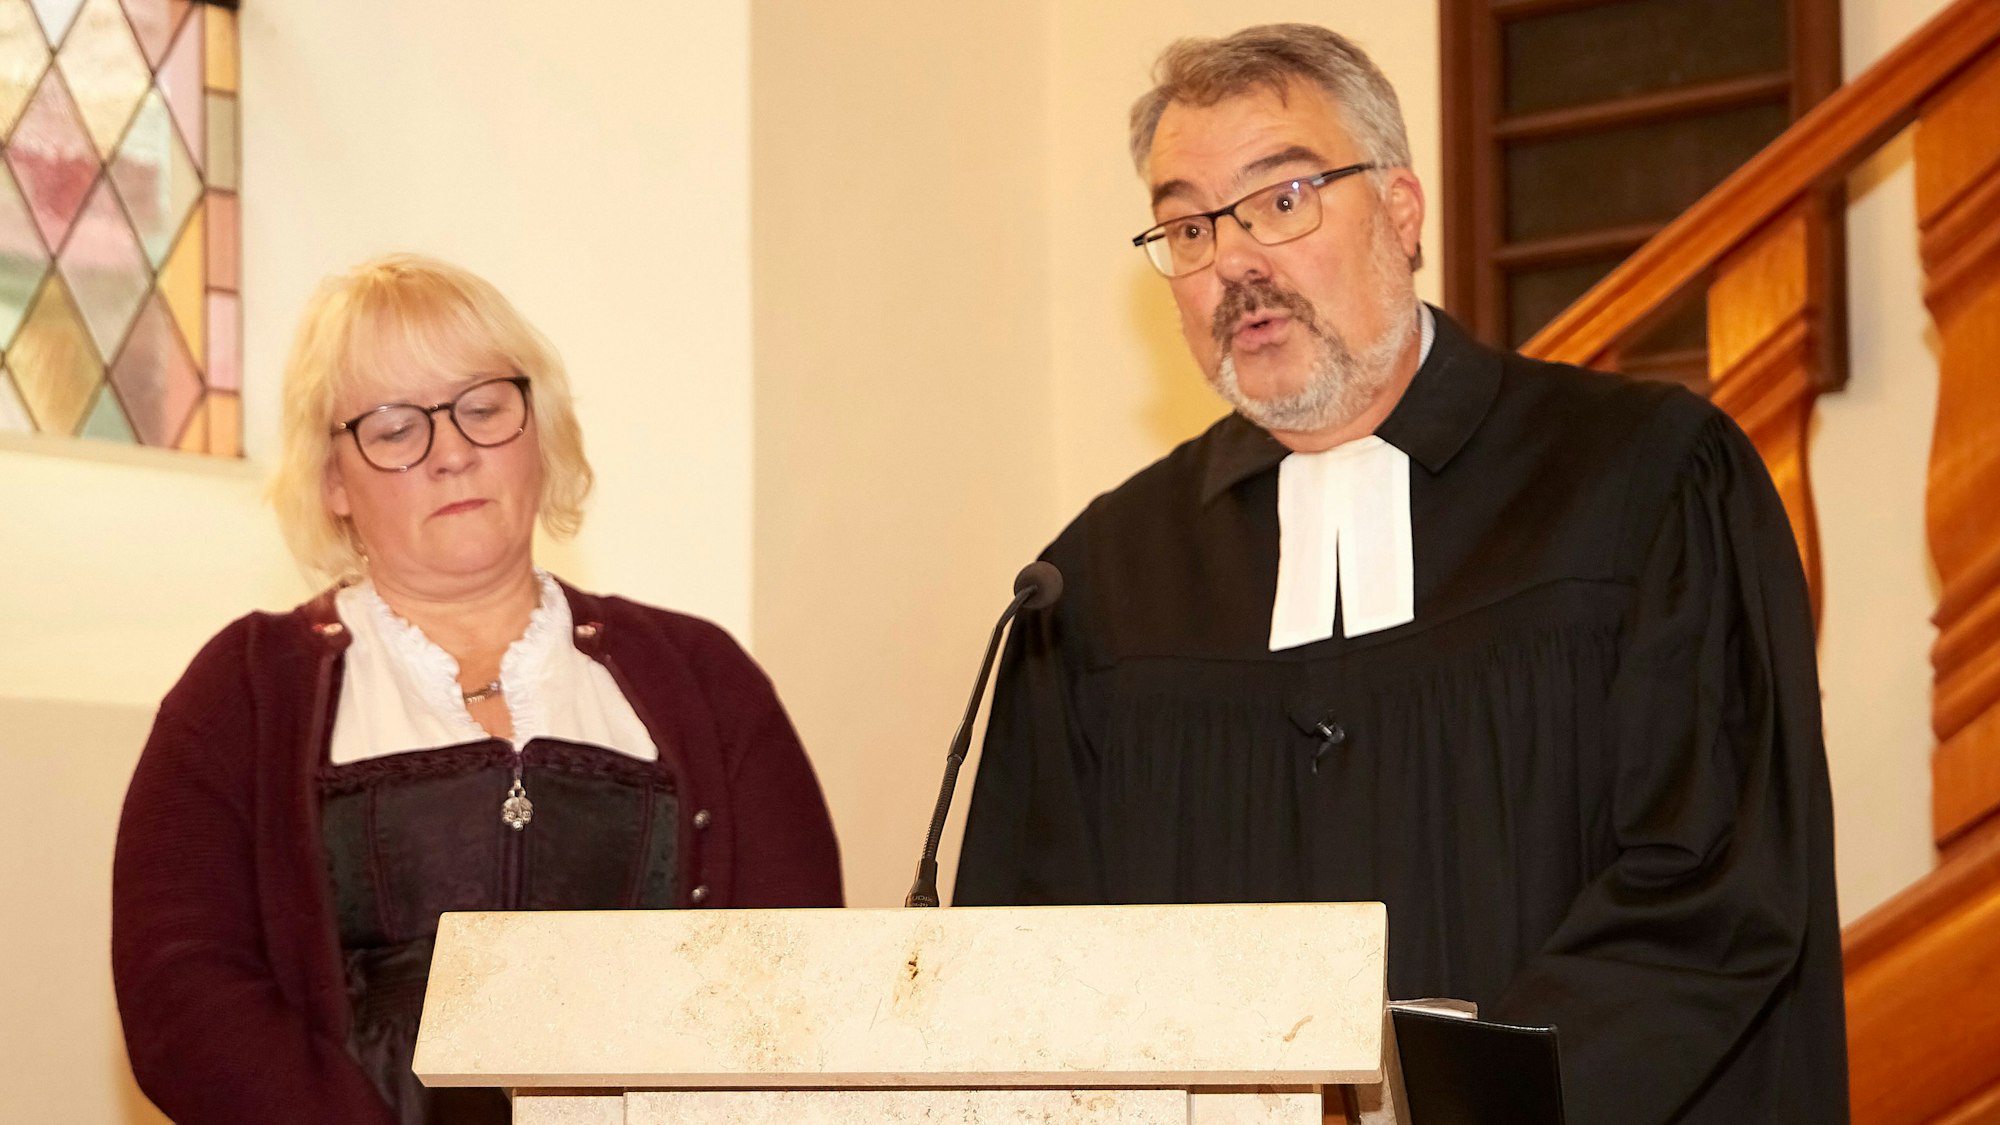 Ehefrau Heike und Pfarrer Erik Schumacher am Rednerpult in der Kirche.